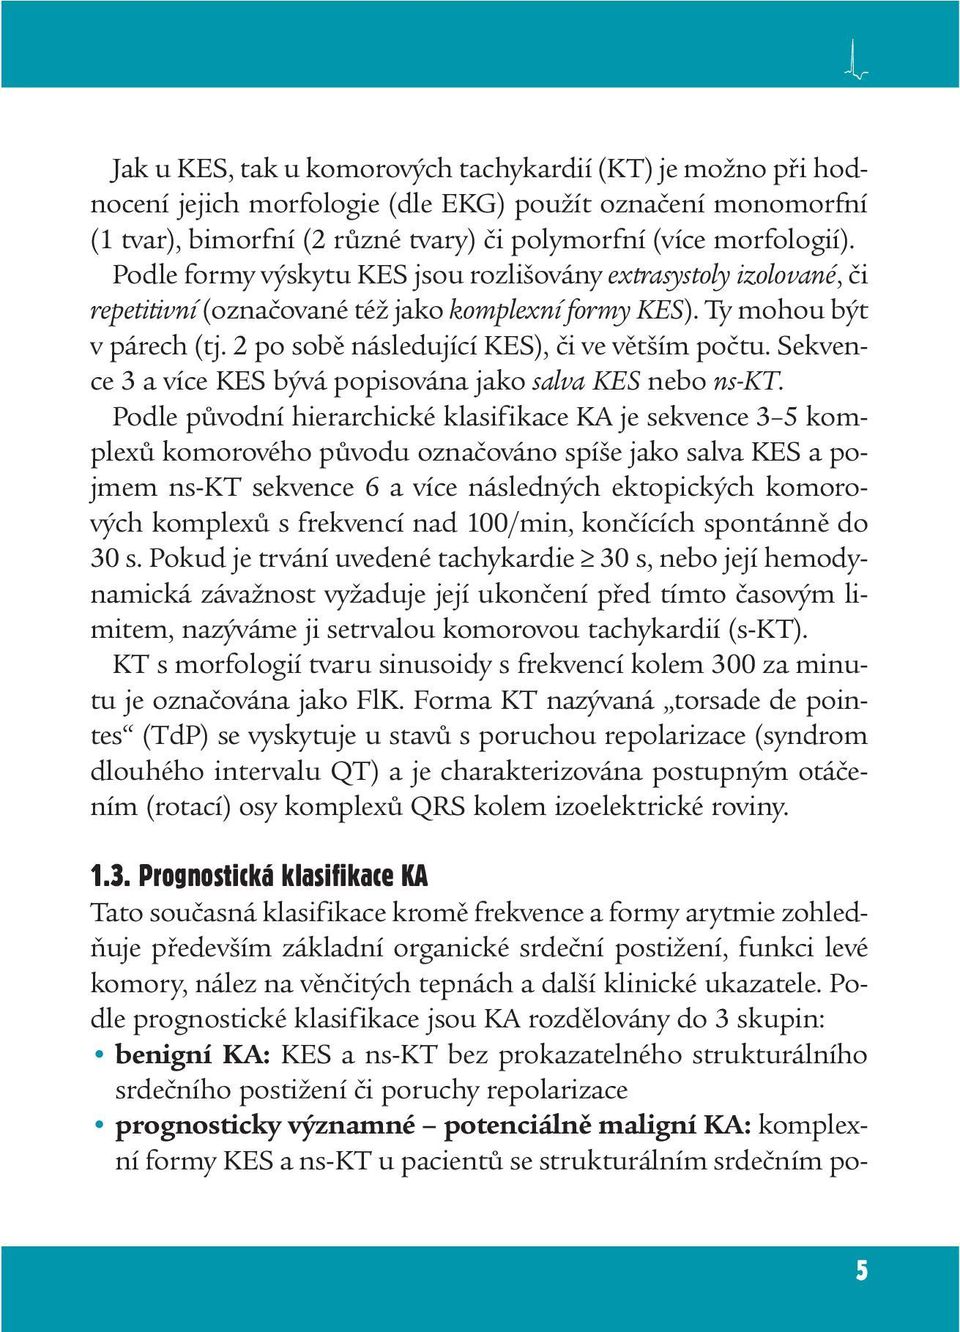 Sekvence 3 a více KES bývá popisována jako salva KES nebo ns-kt.